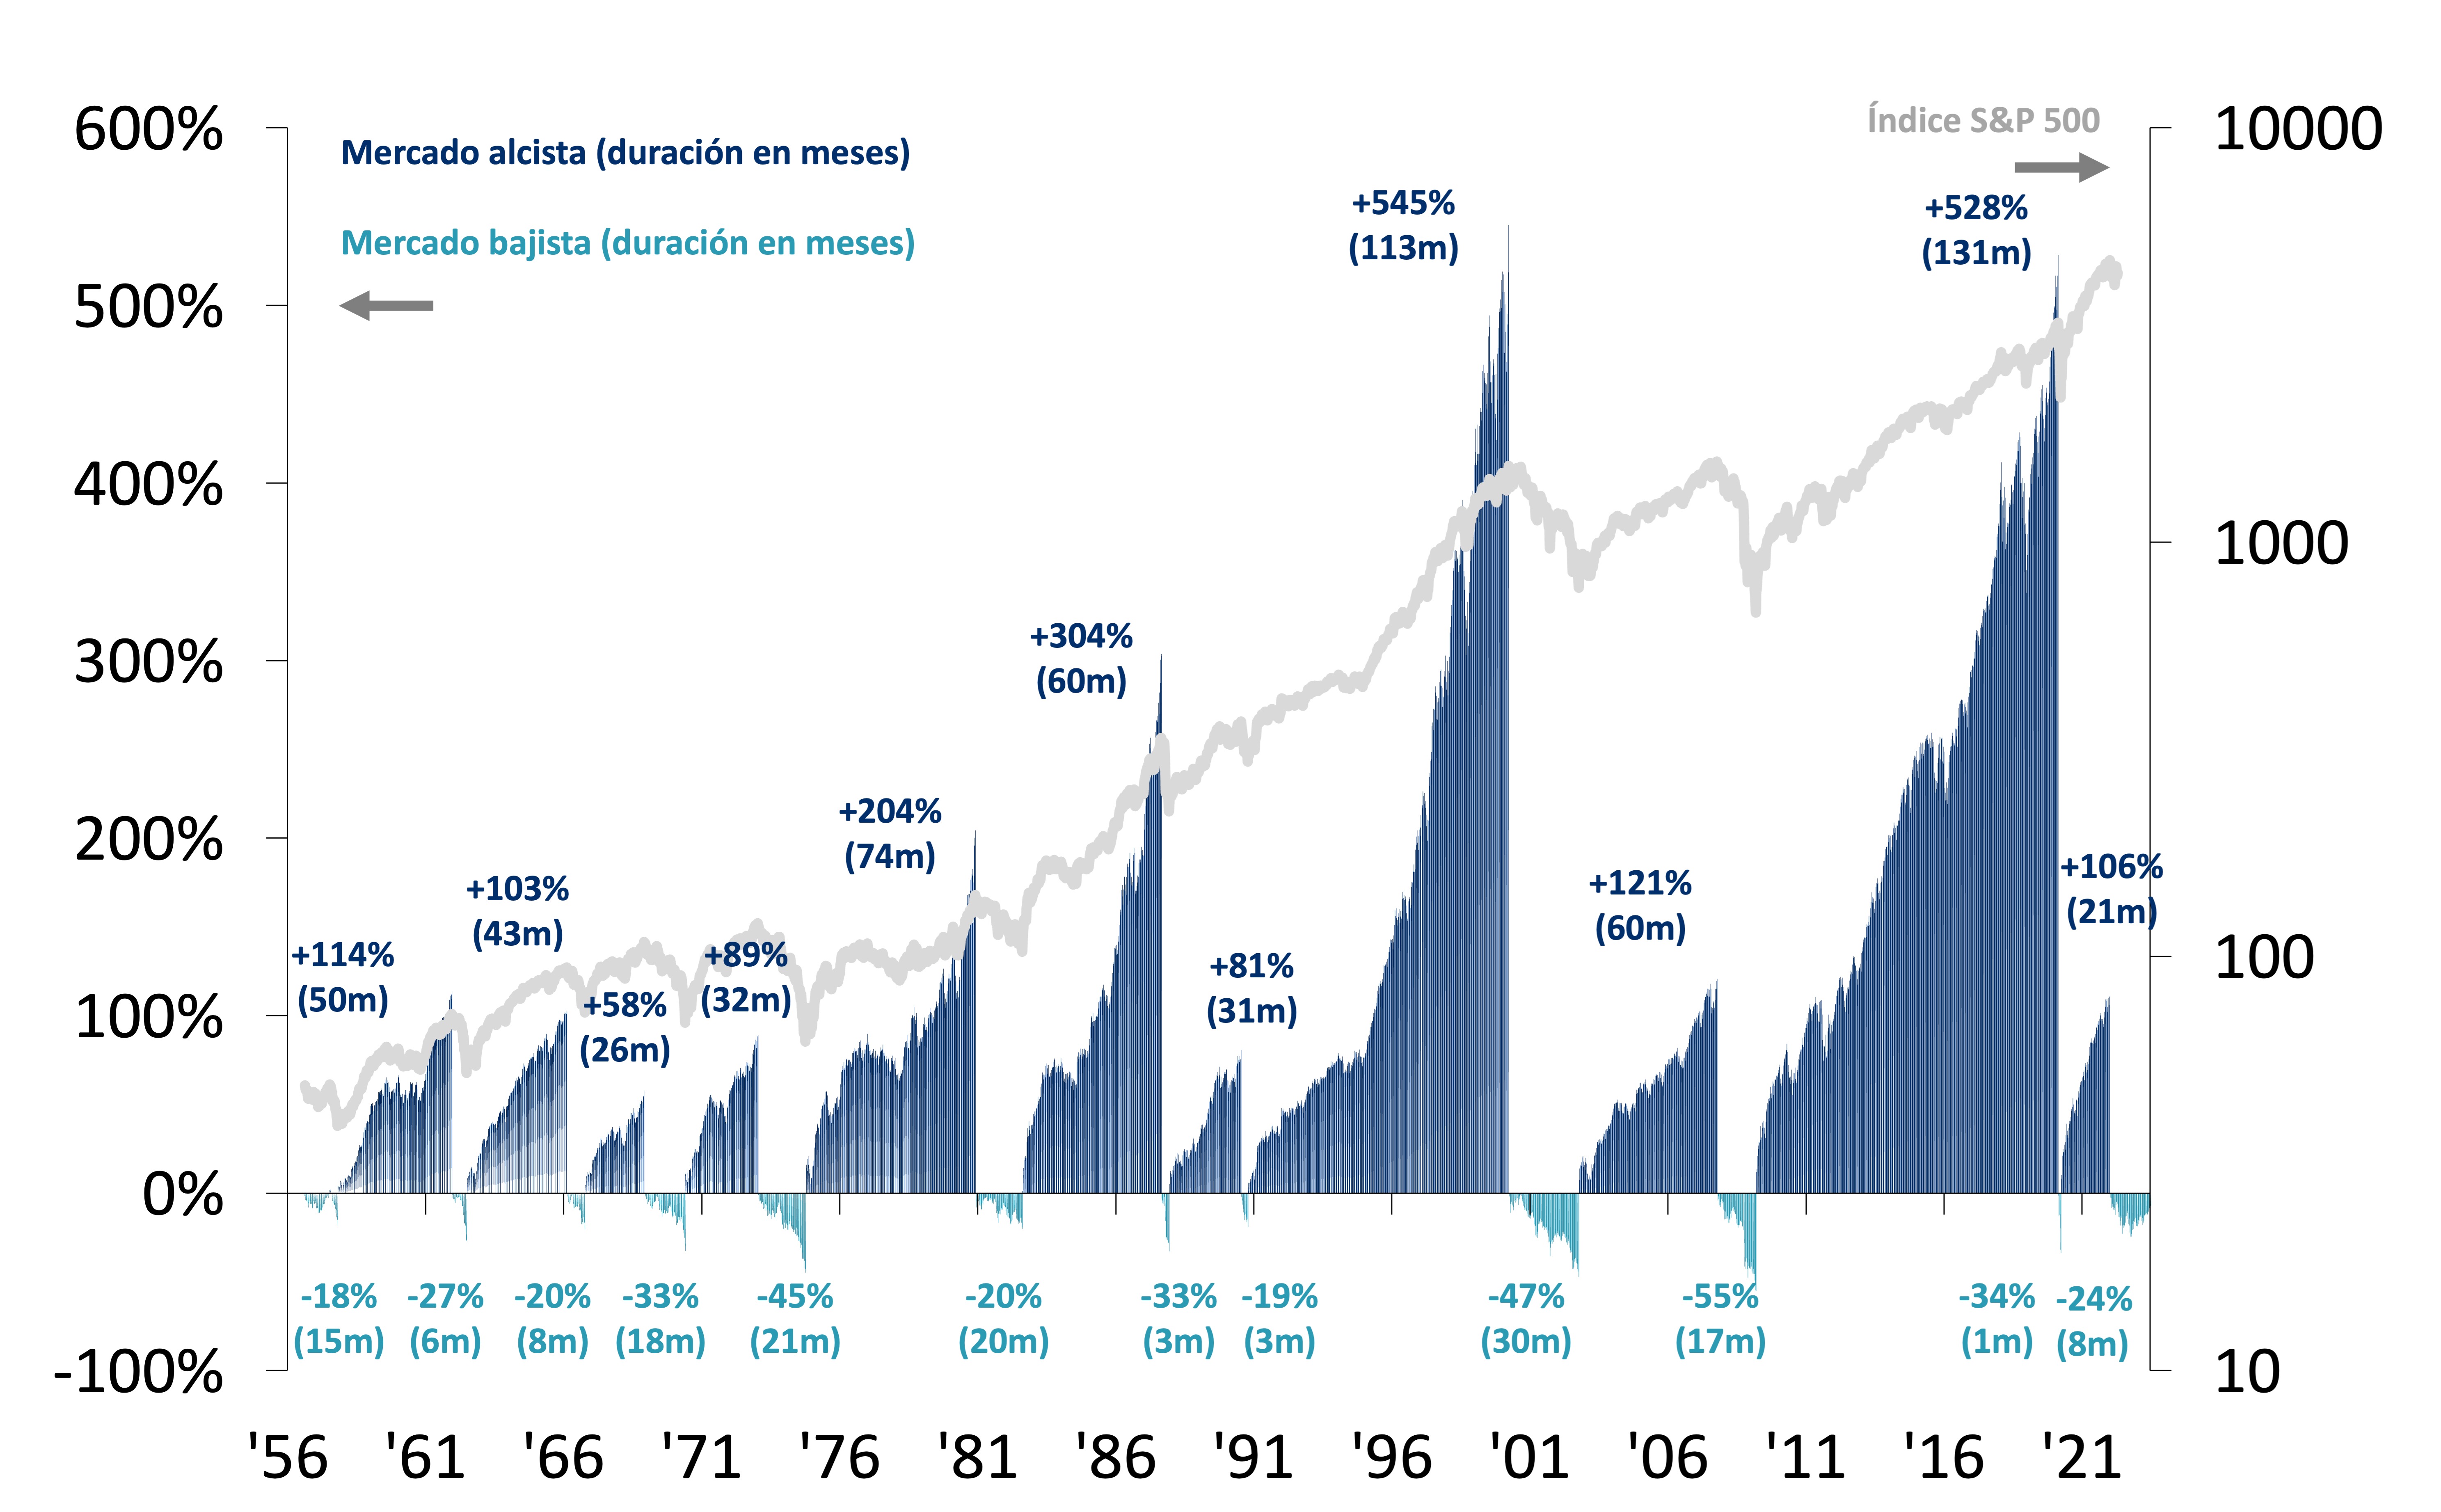 Histórico de los mercados alcistas y bajistas del S&P 500